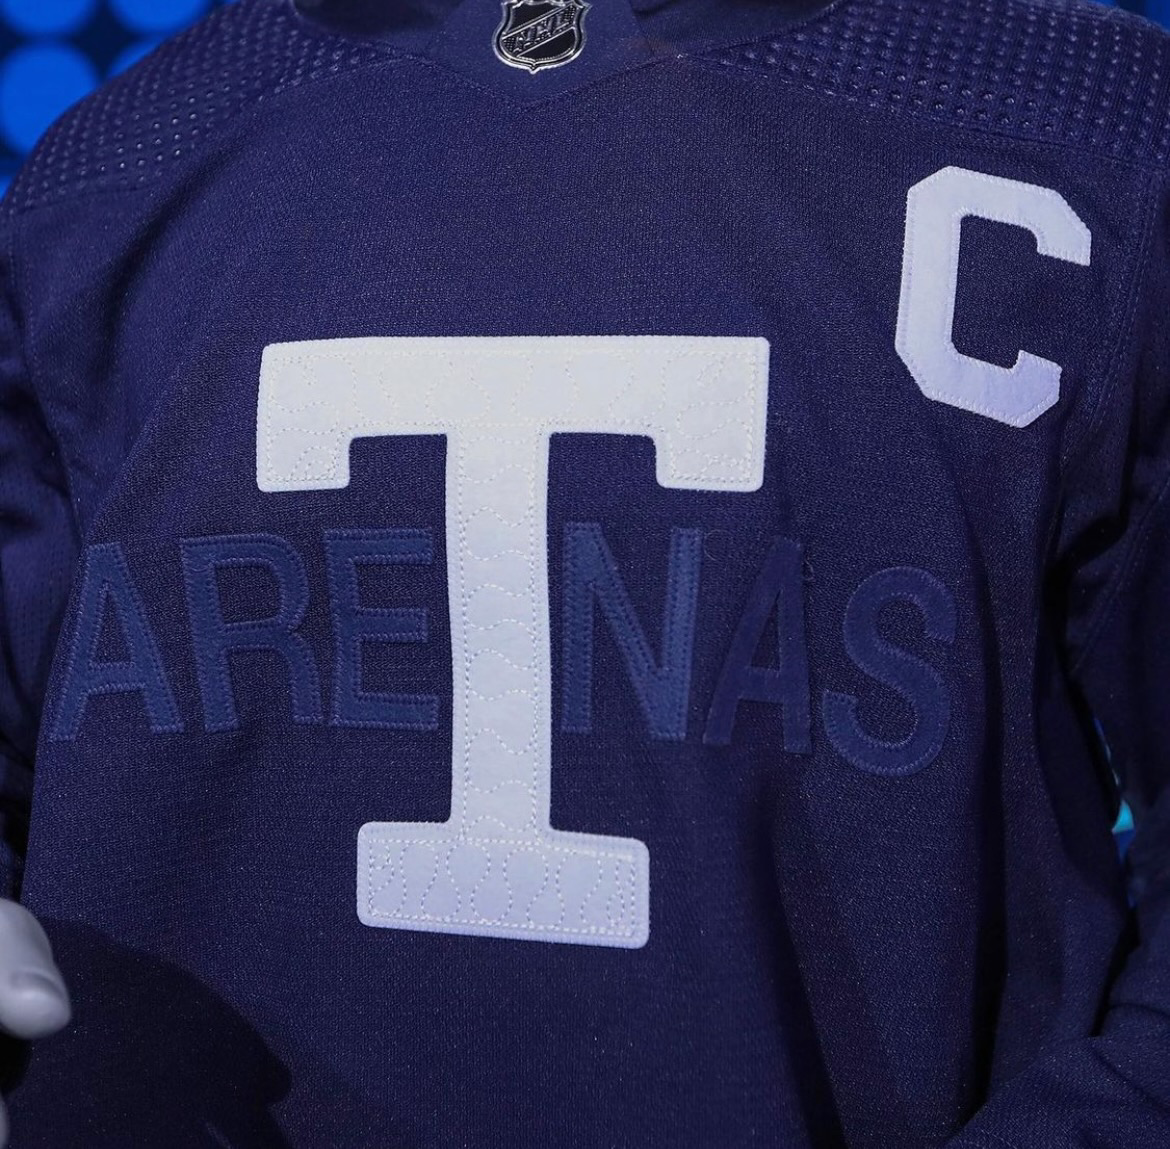 Maple Leafs Throwback Uniform — UNISWAG